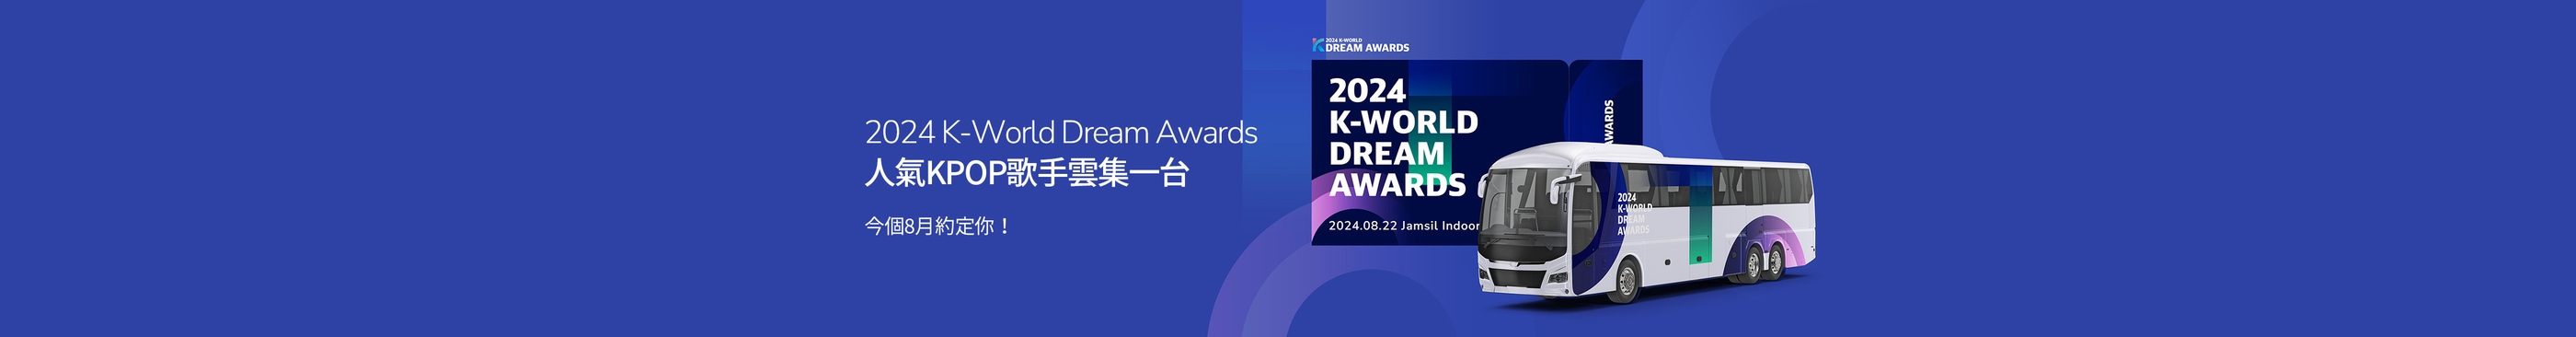 2024 K-World Dream Awards